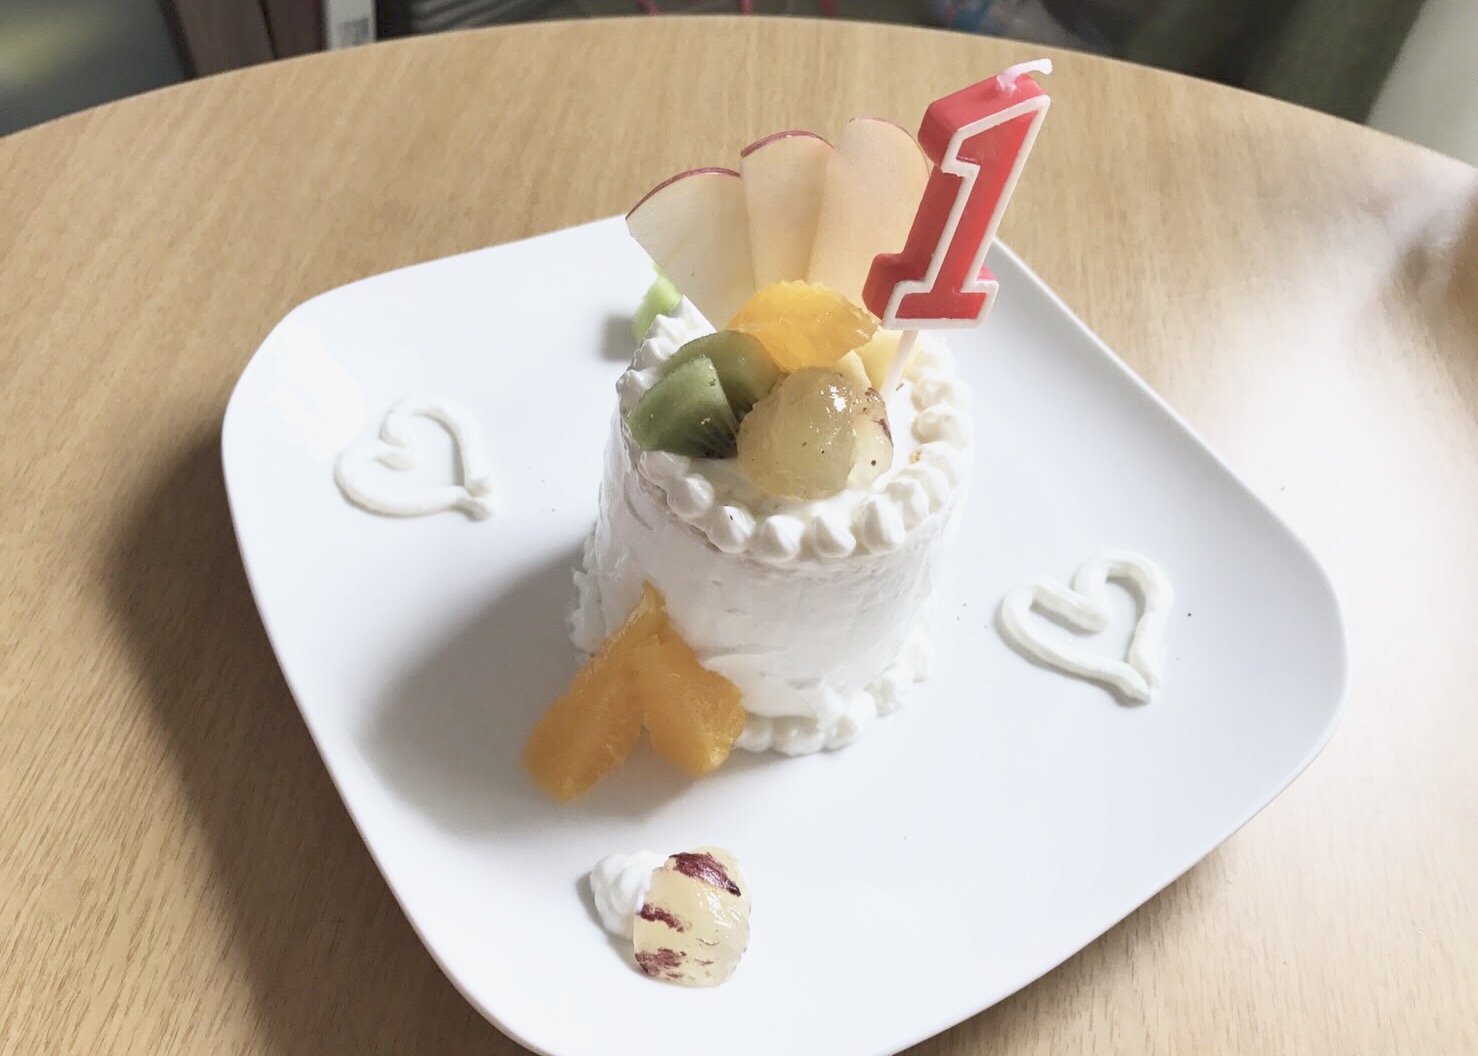 時系列 ムスタチオ 独占 一 歳 誕生 日 ケーキ 水切り ヨーグルト 原稿 分析 降臨